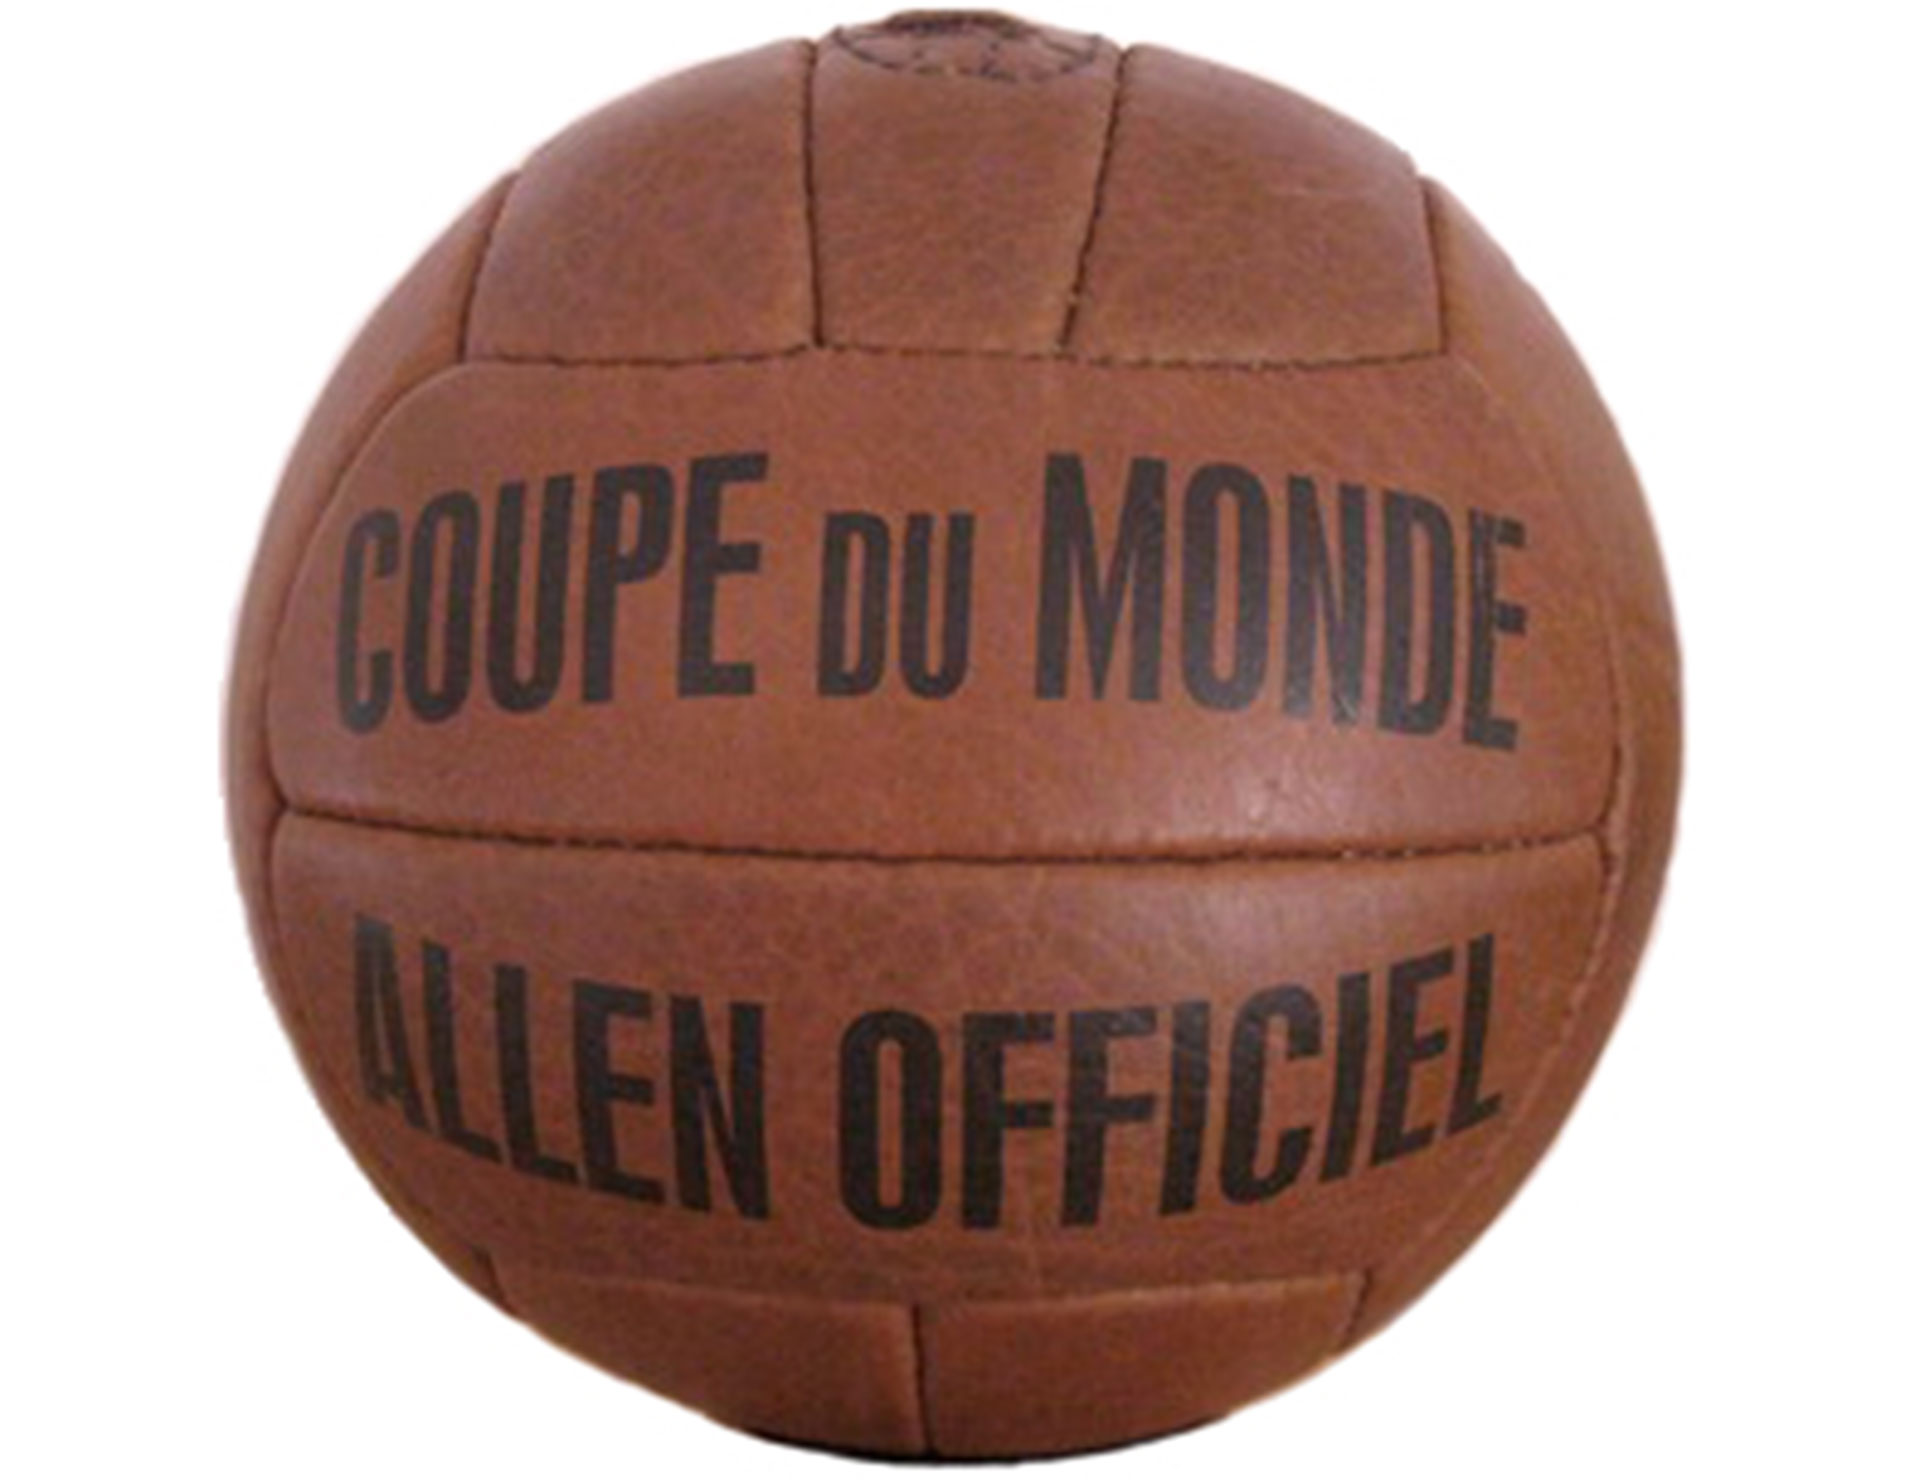 Pelota de Francia 1938 "Coupe du monde"